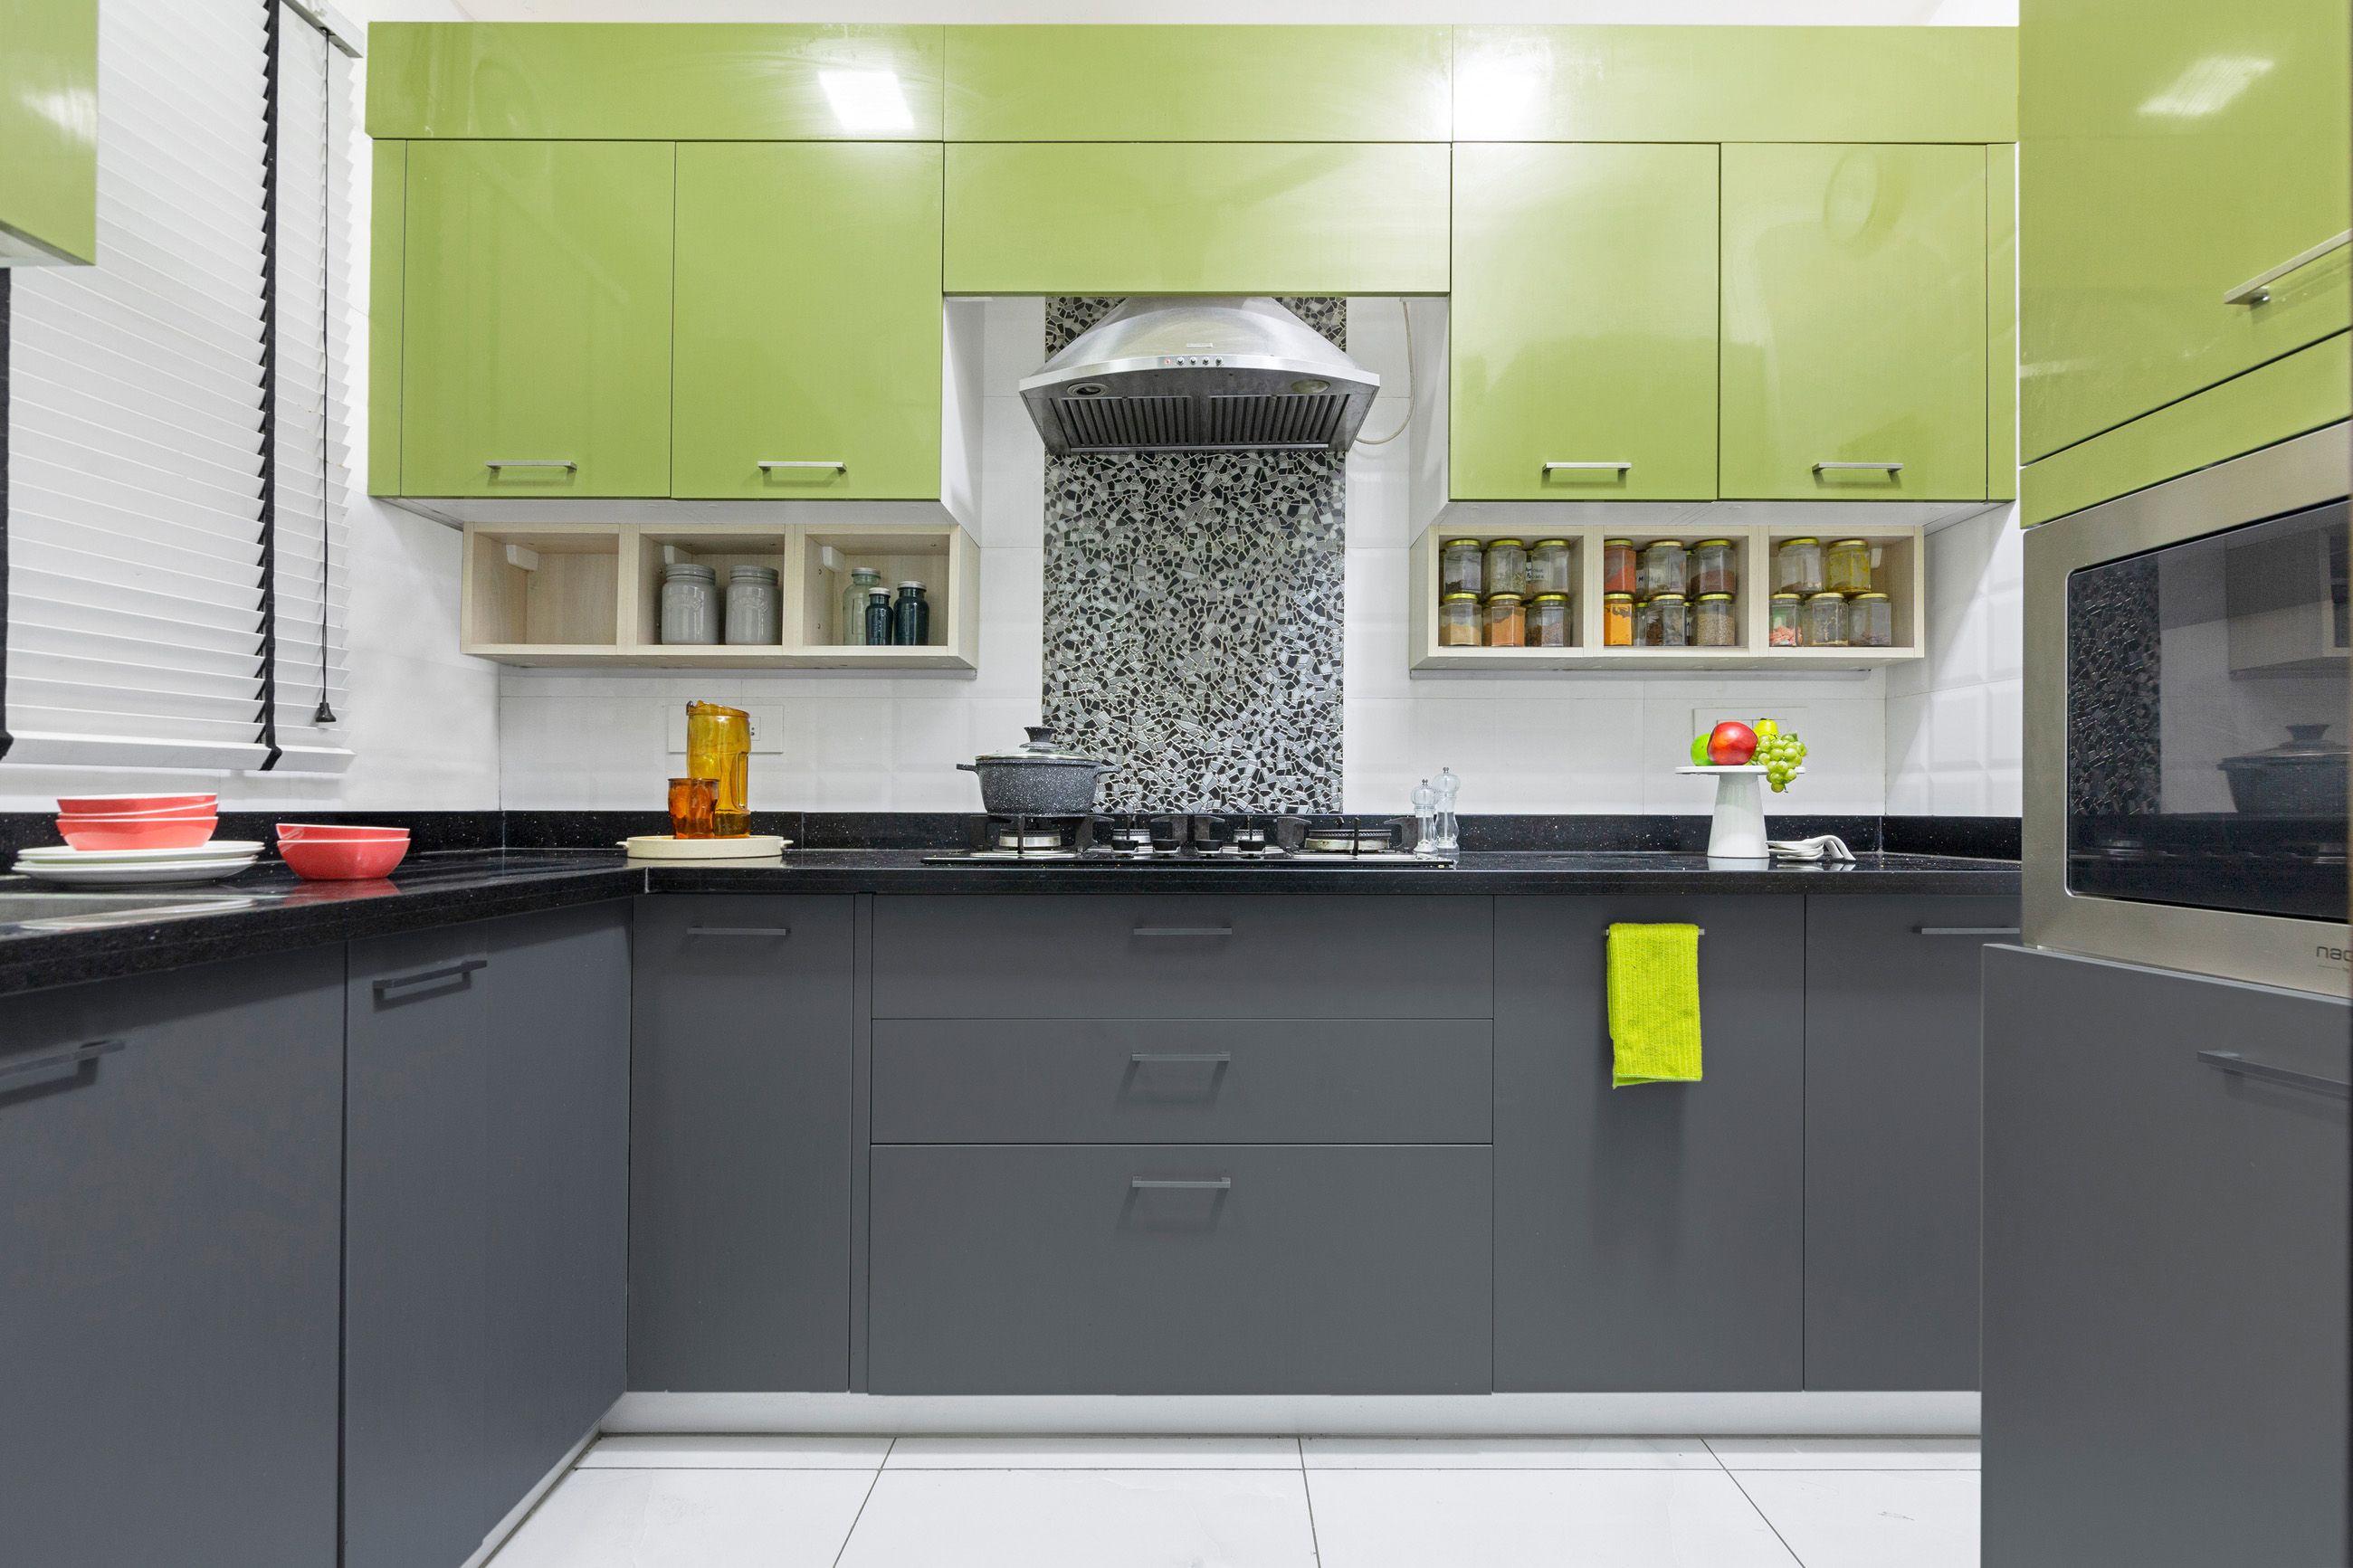 Modern L-Shape Modular Kitchen Design In Green And Grey